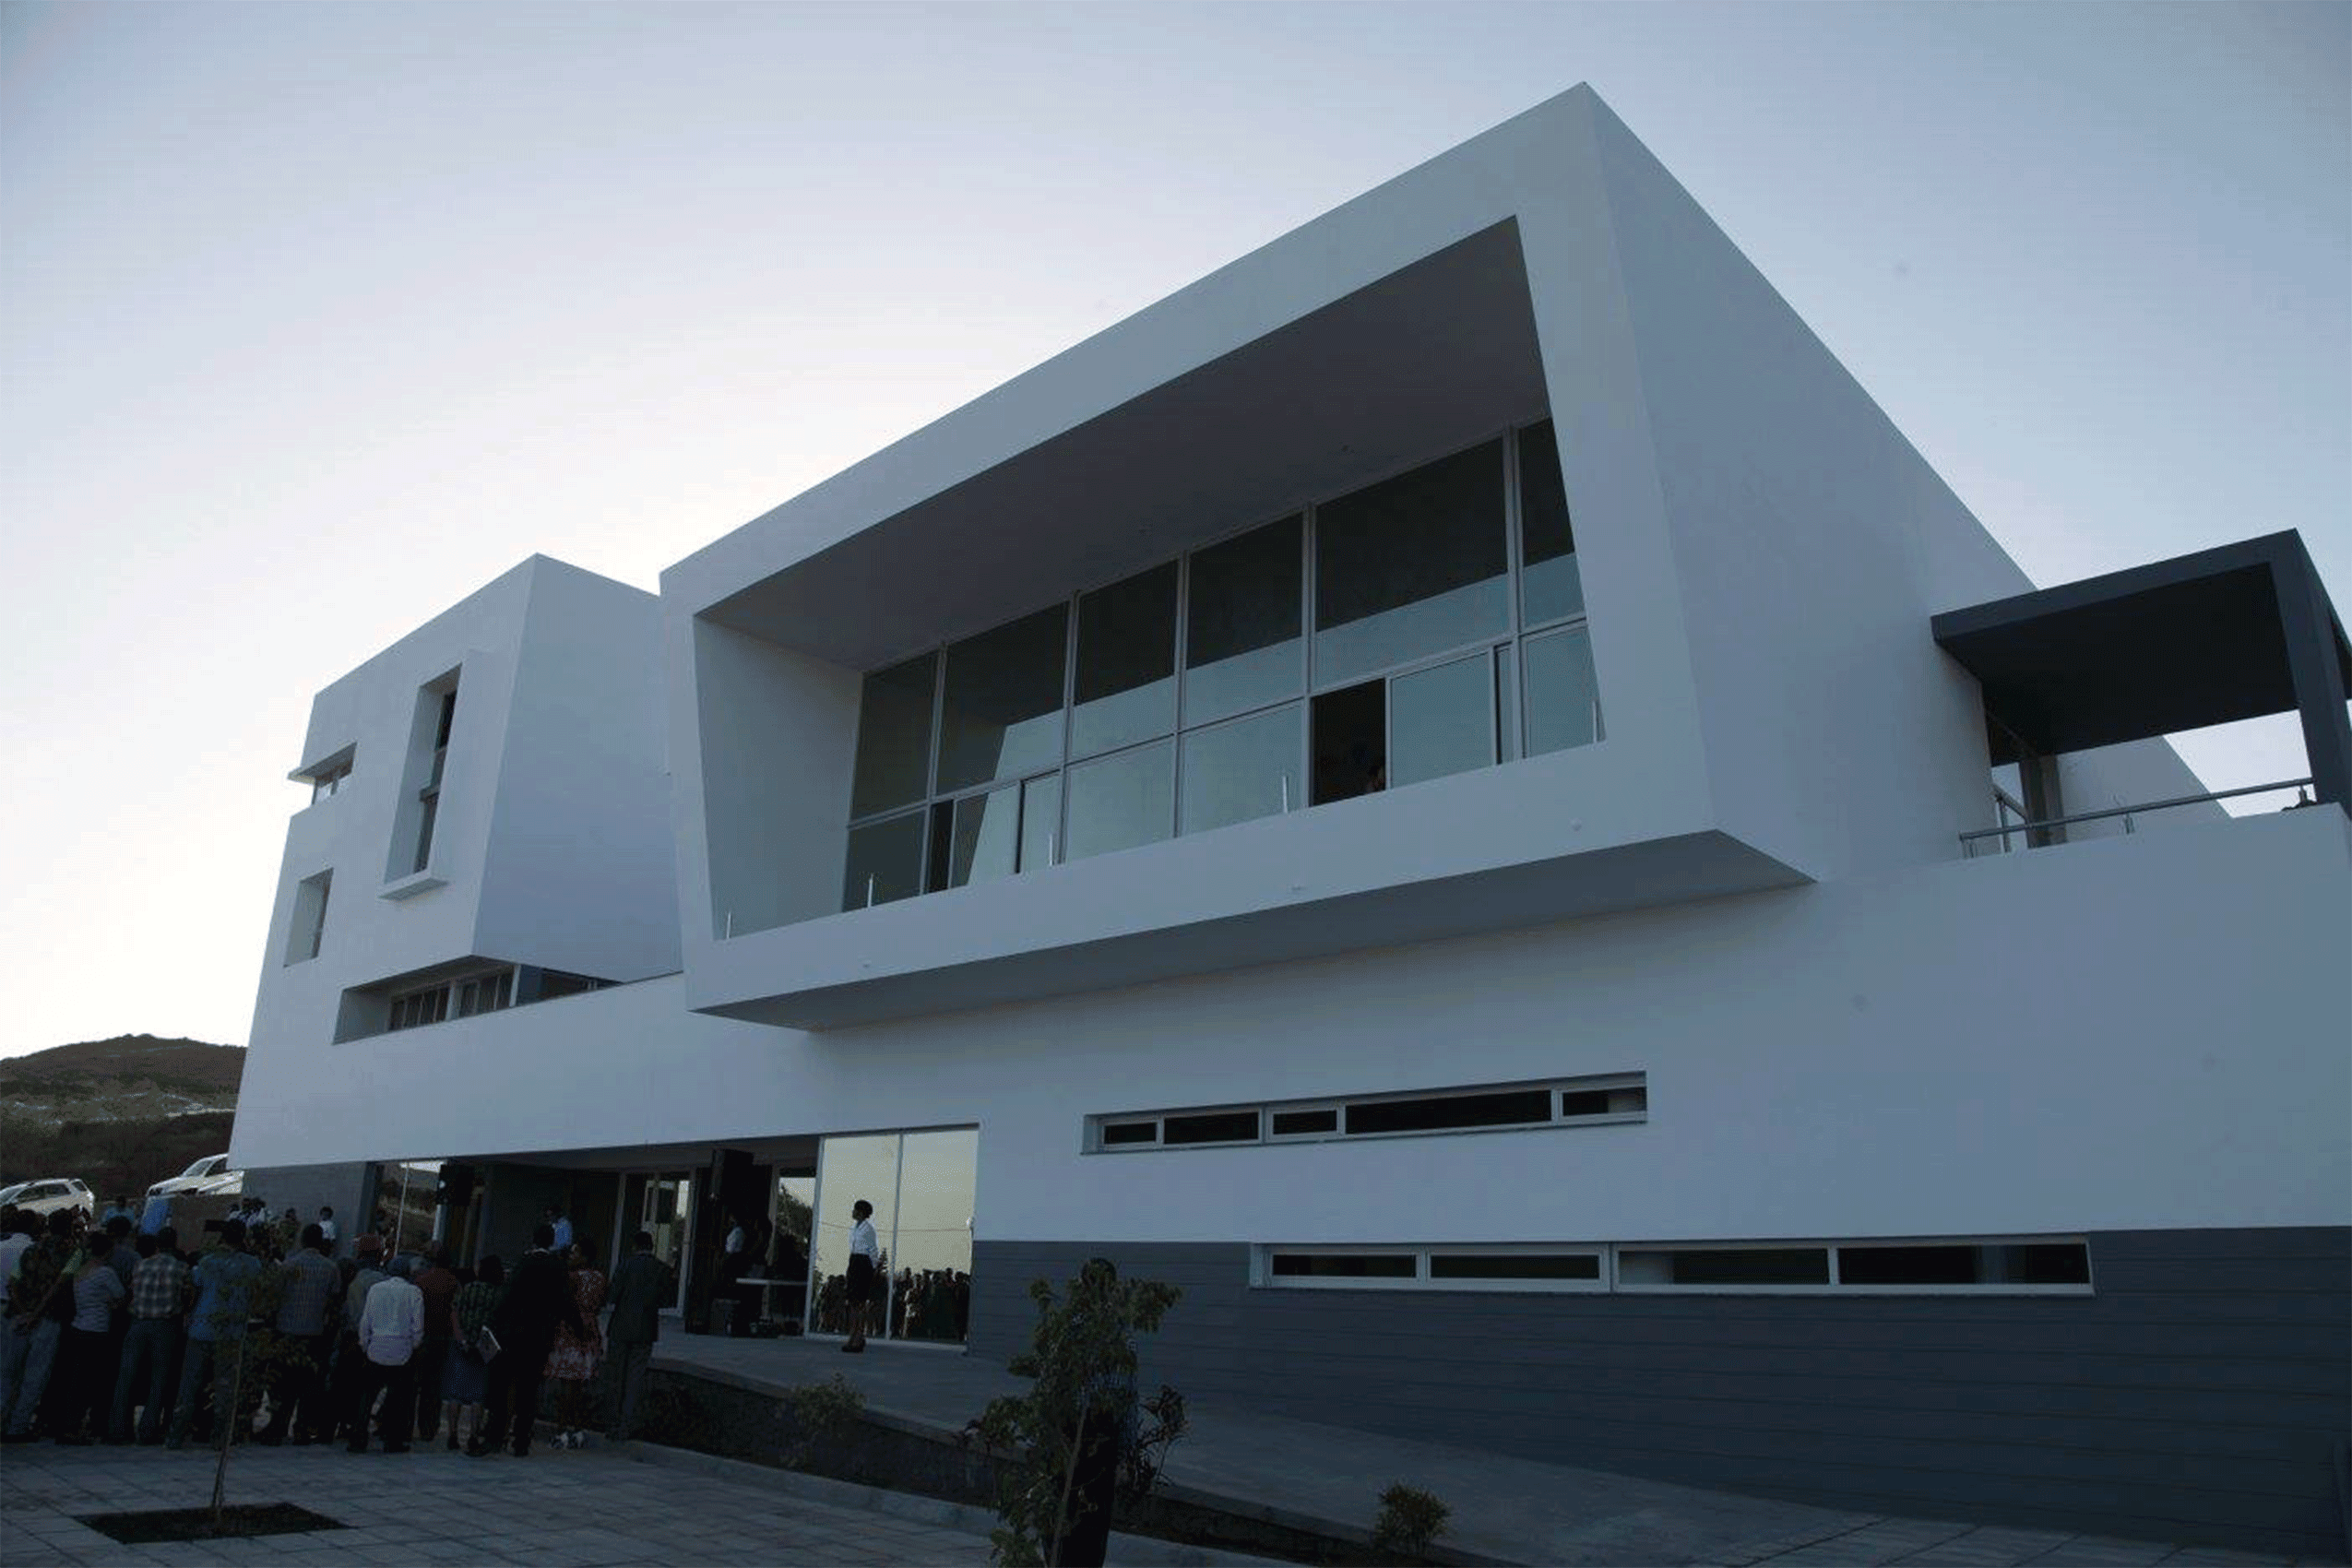 Edificio da Câmara Municipal de Santa Catarina do Fogo